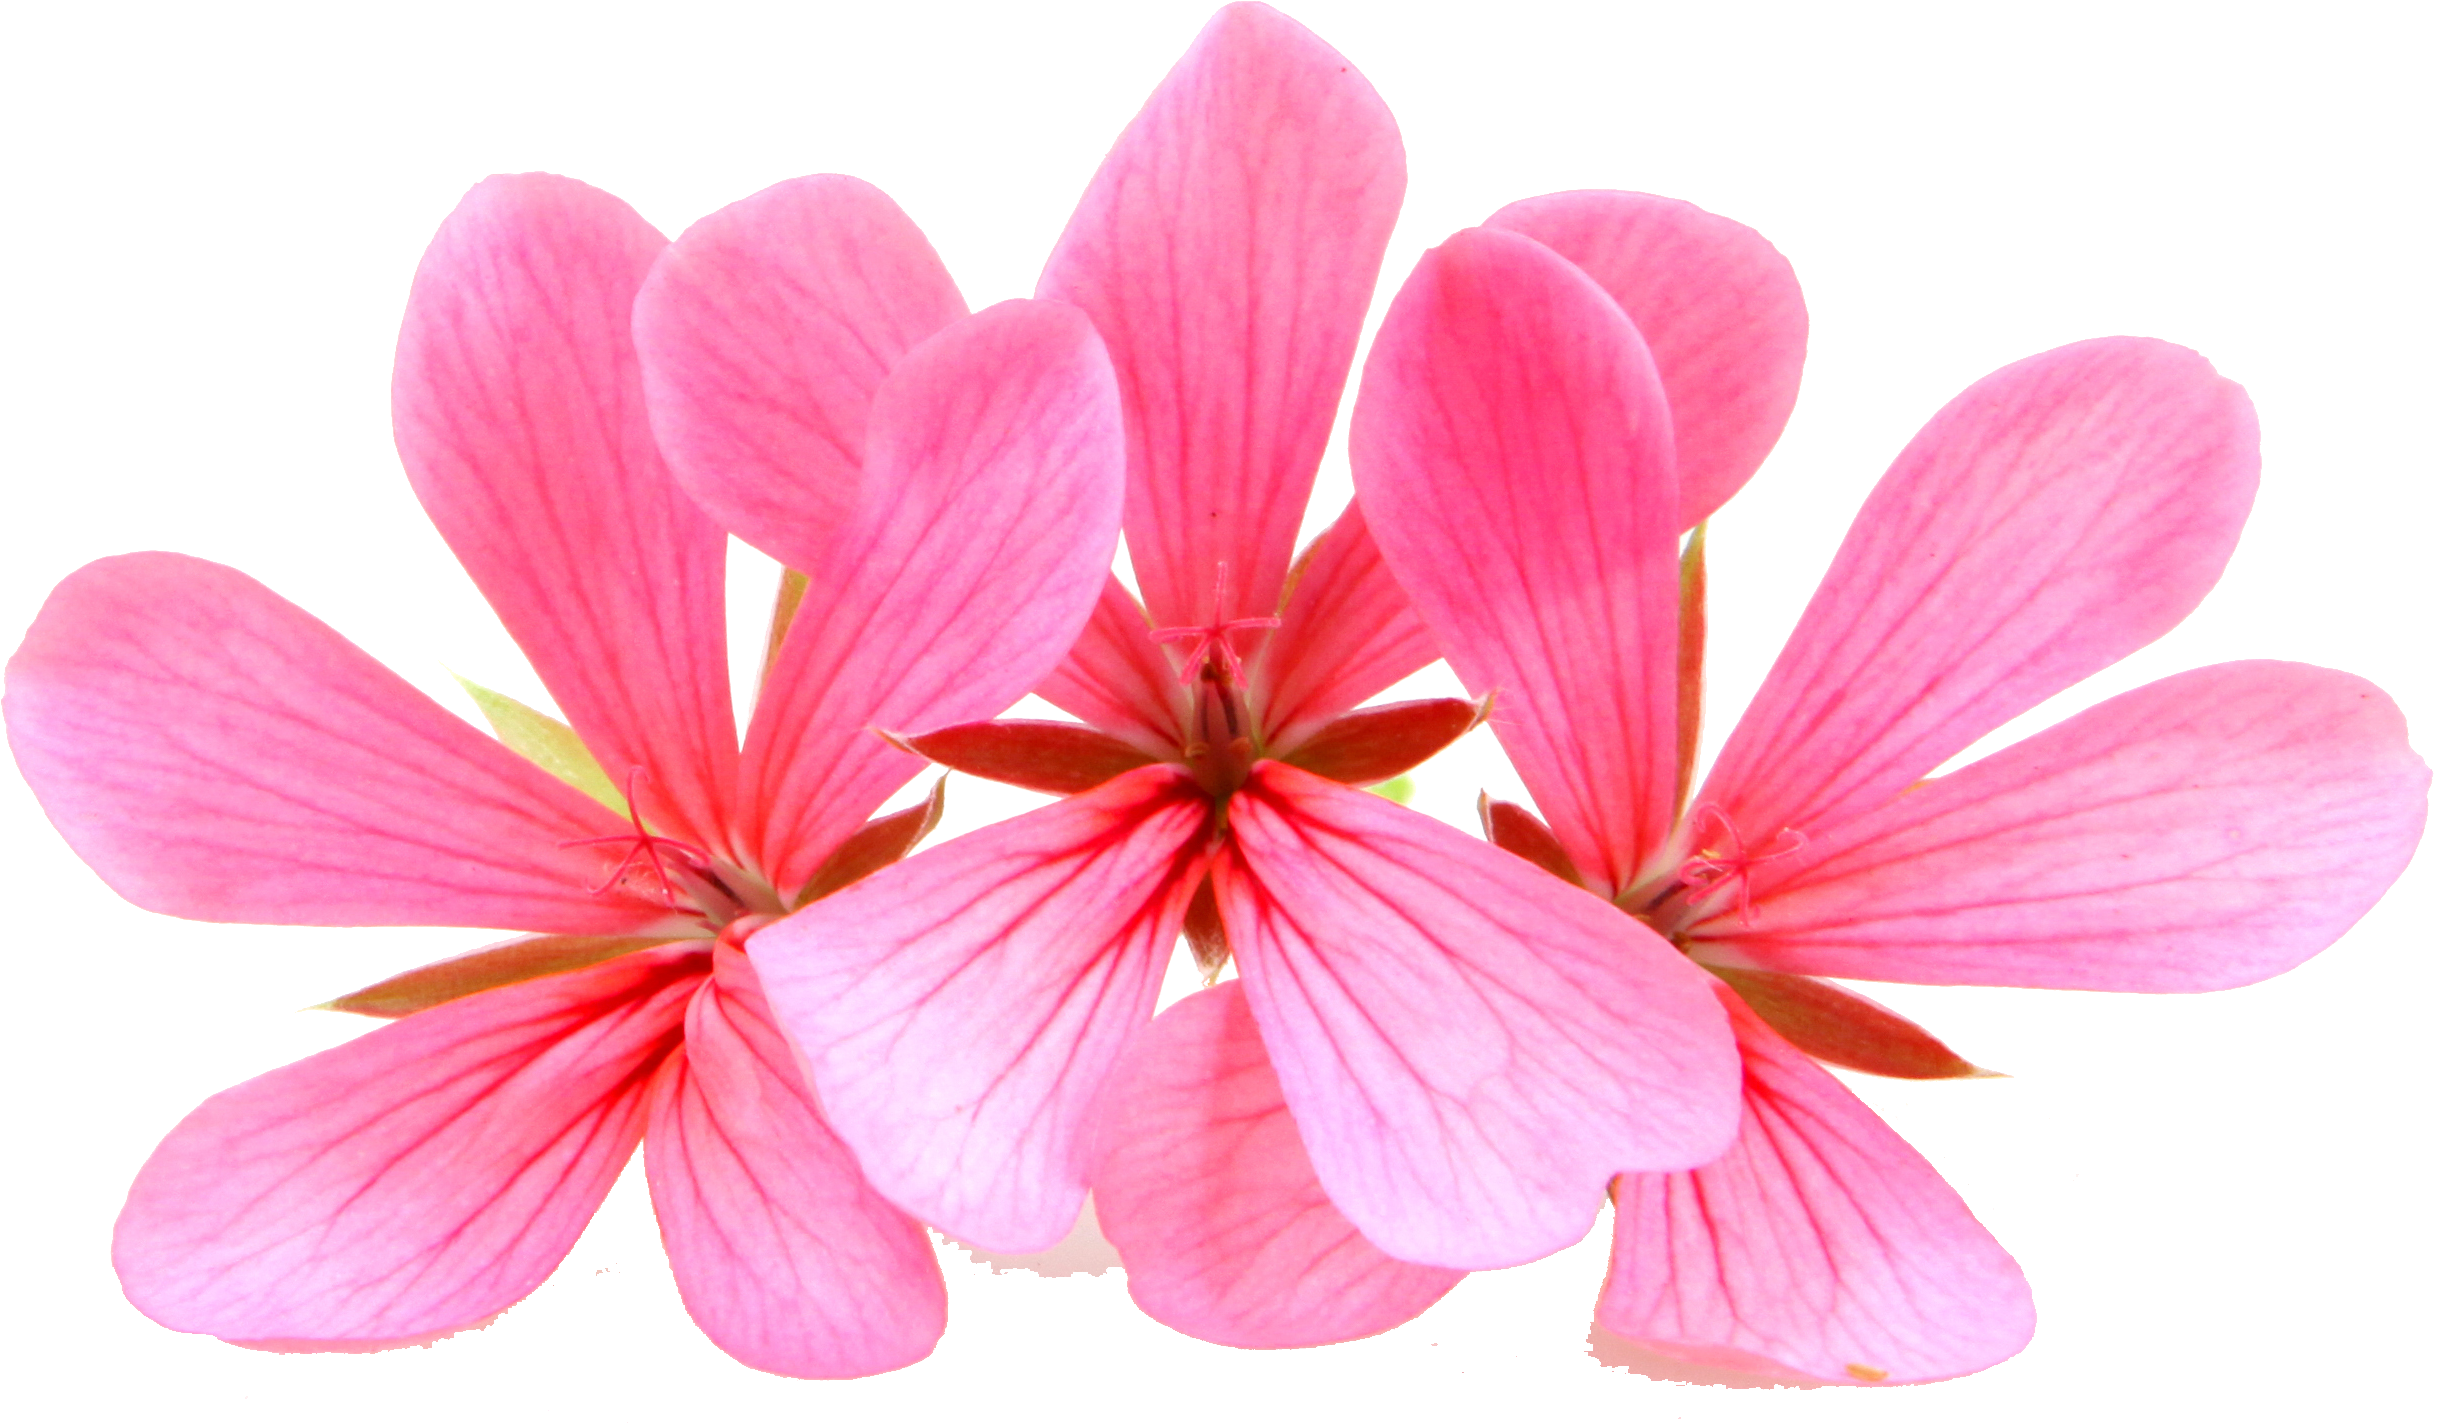 Single Geranium Flower) - Geranium Clipart (3018x2256), Png Download